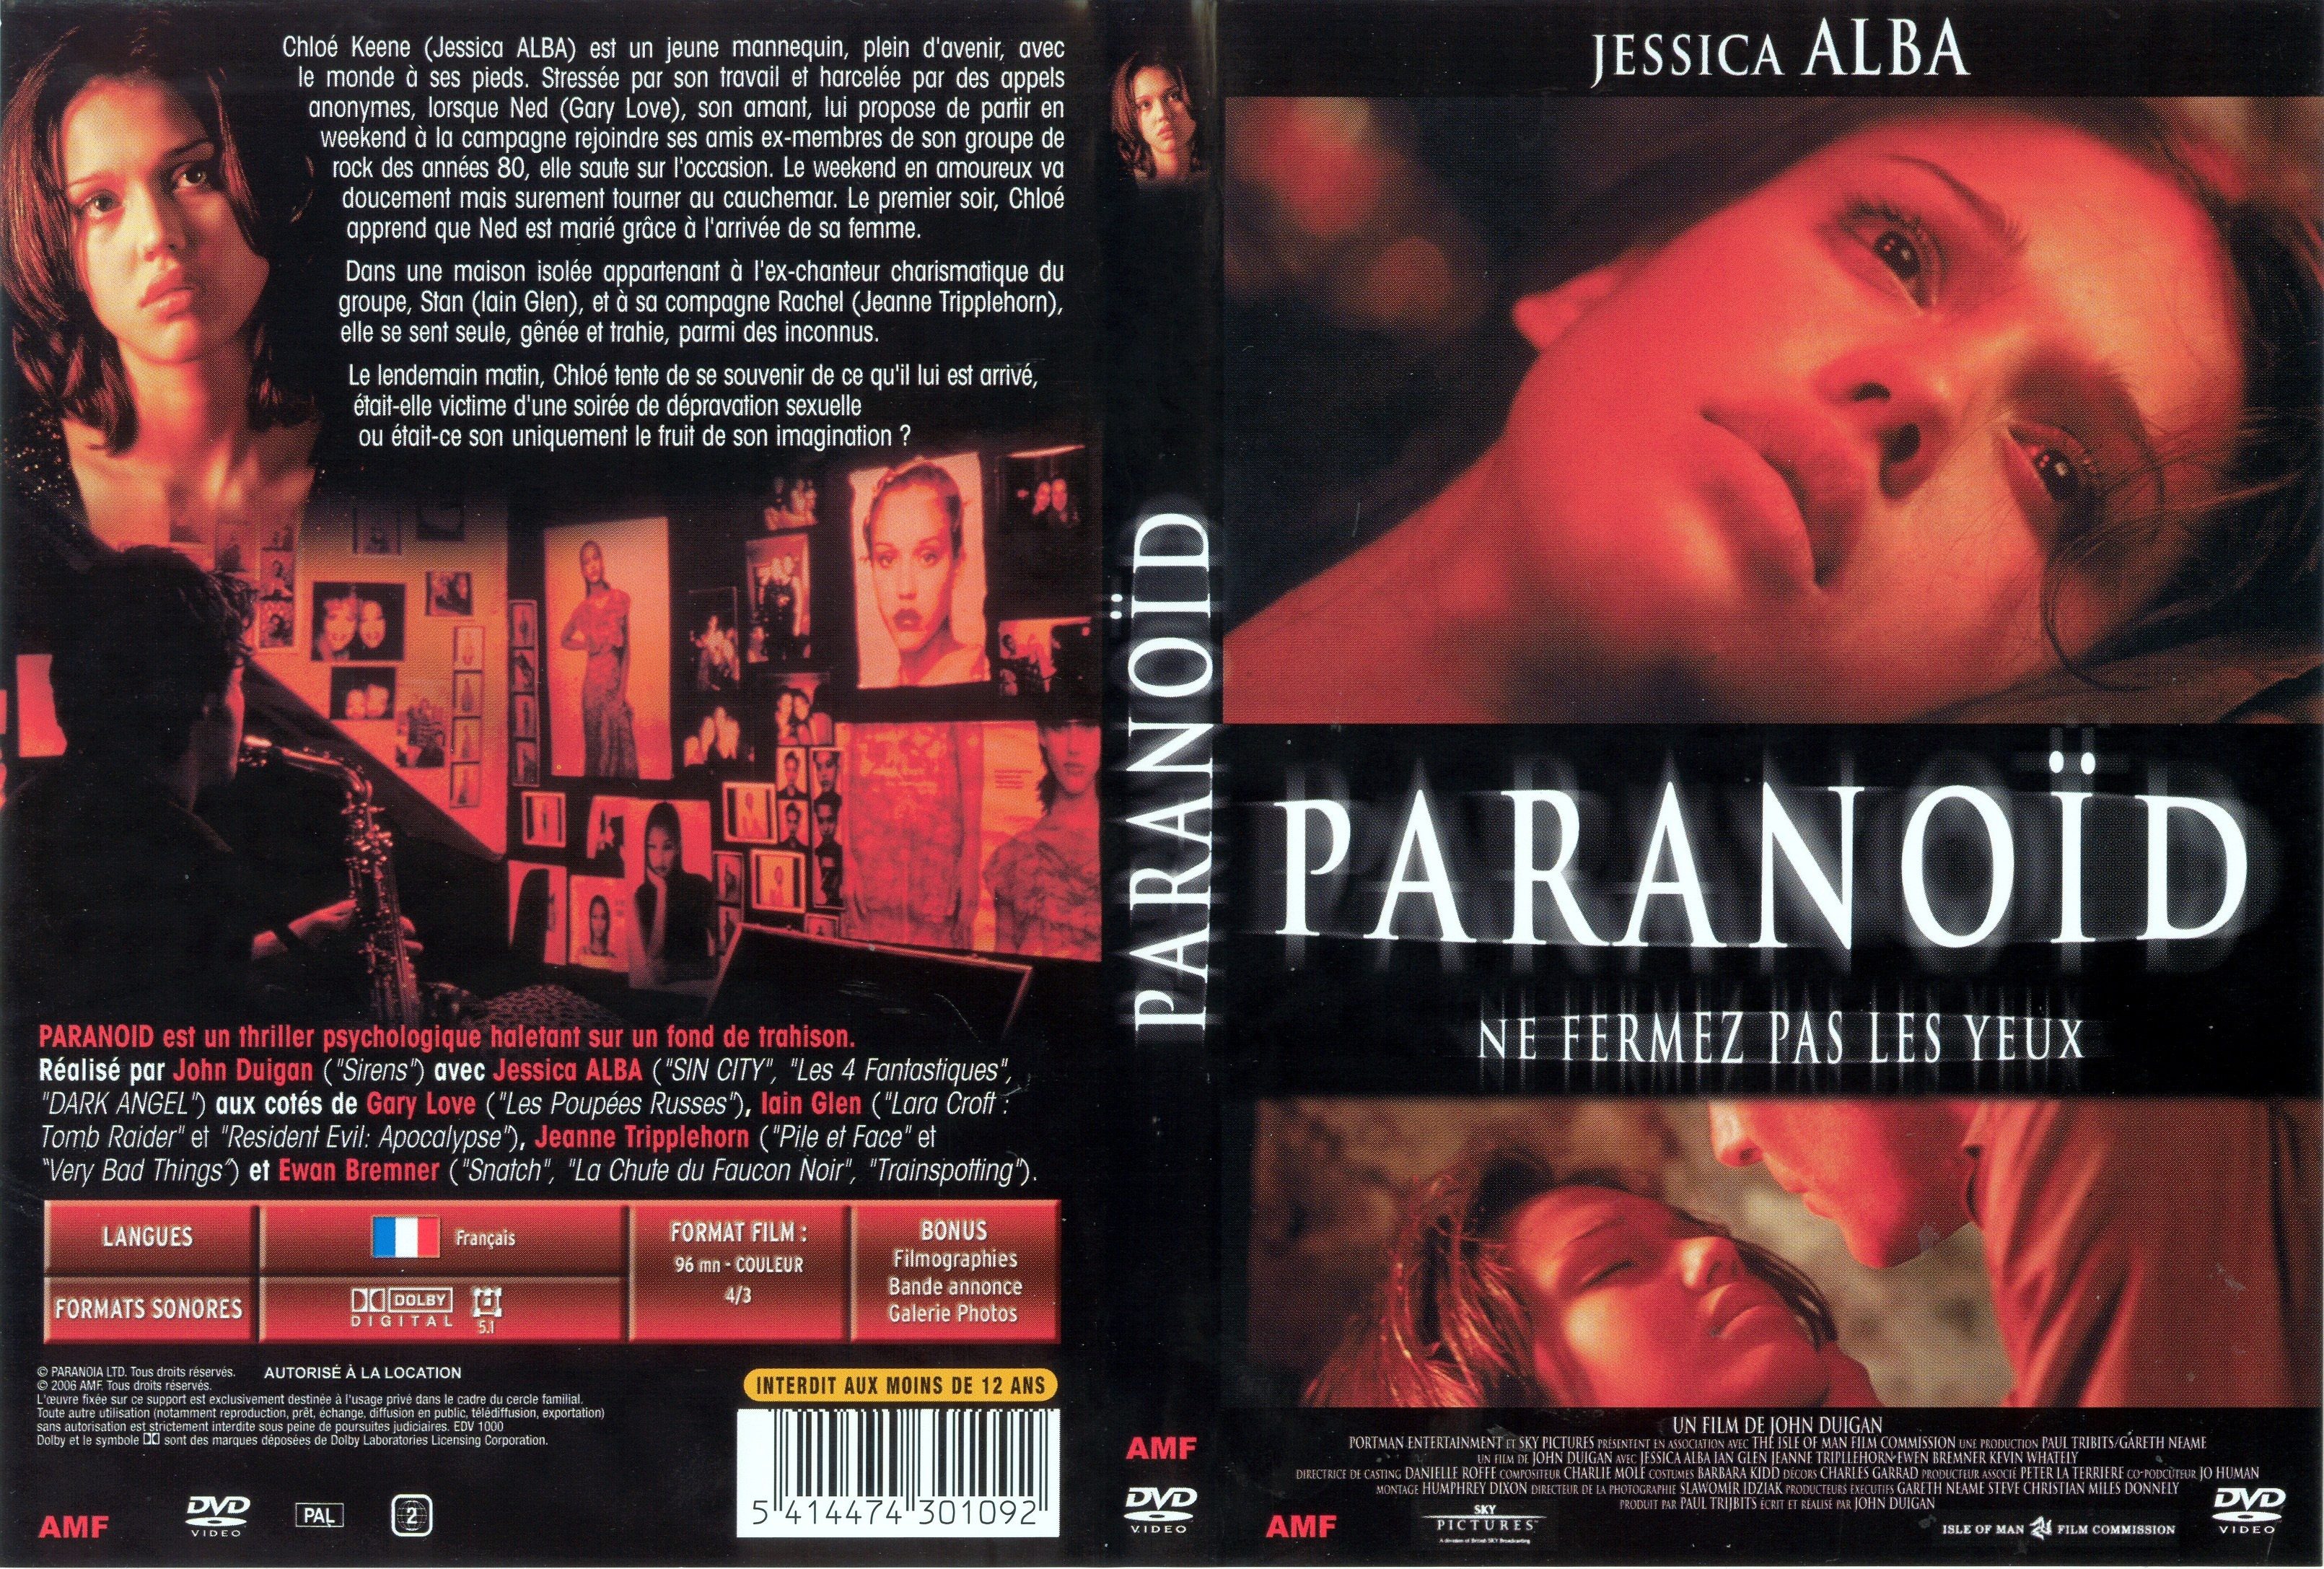 Jaquette DVD Paranoid (Jessica Alba)